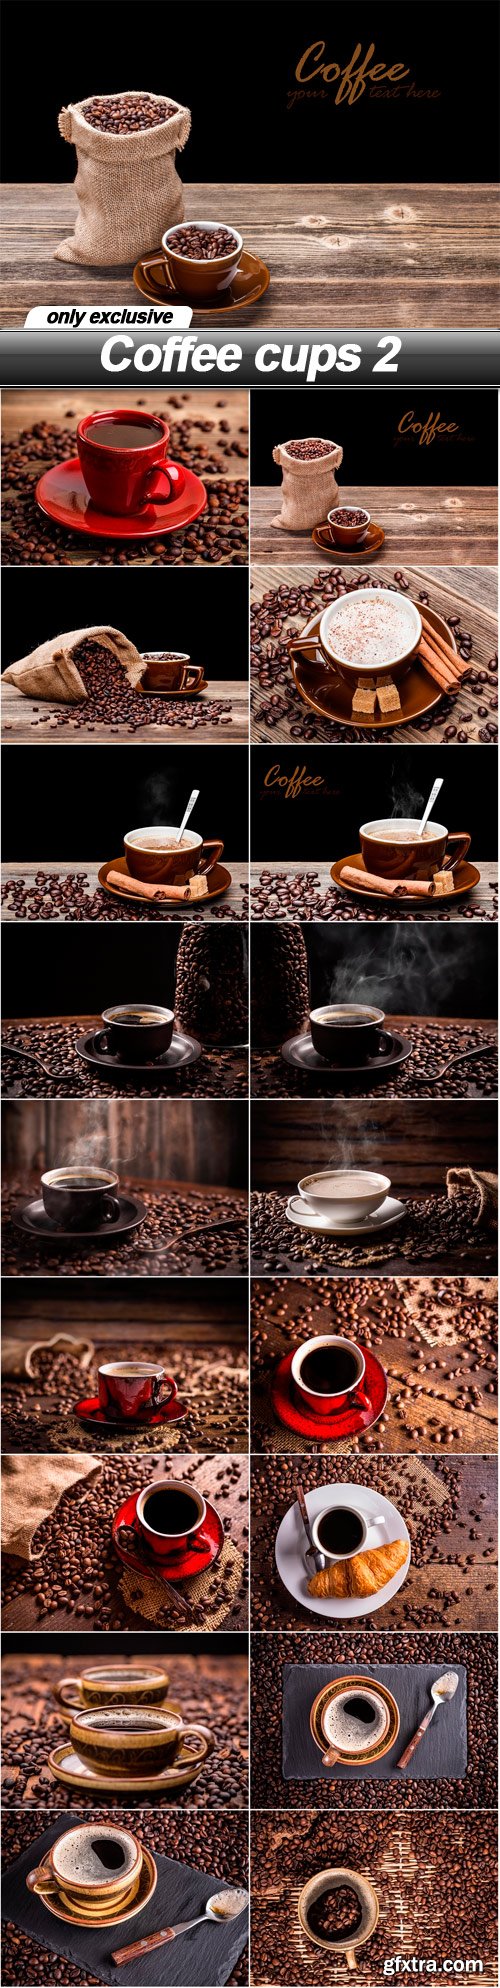 Coffee cups 2 - 18 UHQ JPEG